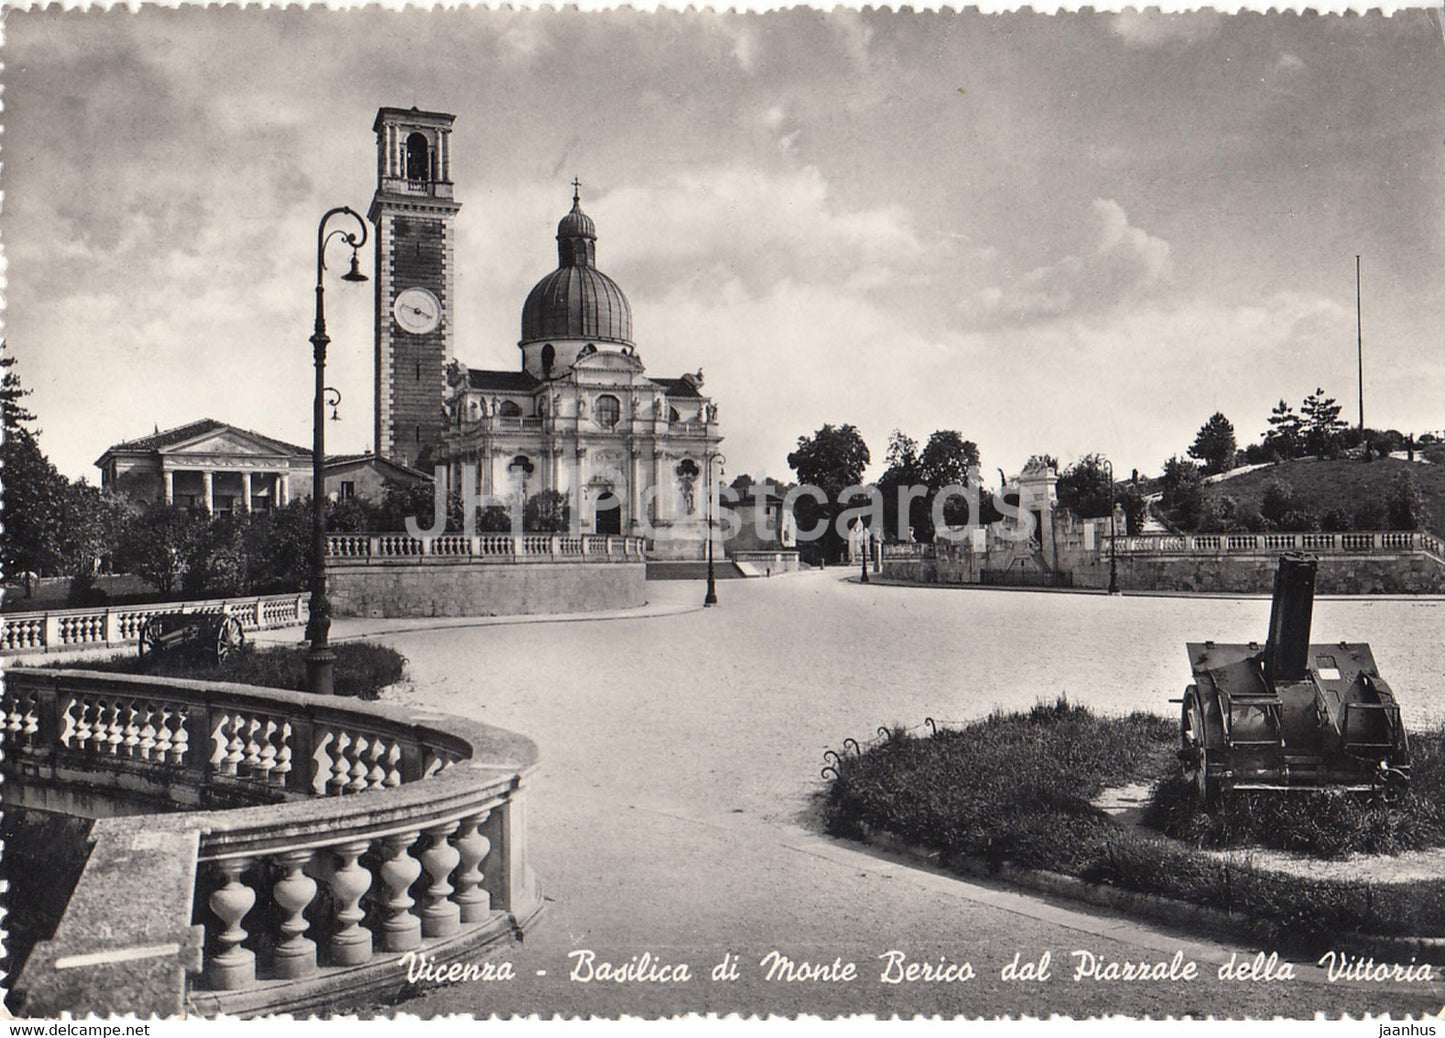 Vicenza - Basilica di Monte Berico dal Piazzale della Vittoria - cannon - old postcard - 1957 - Italy - used - JH Postcards